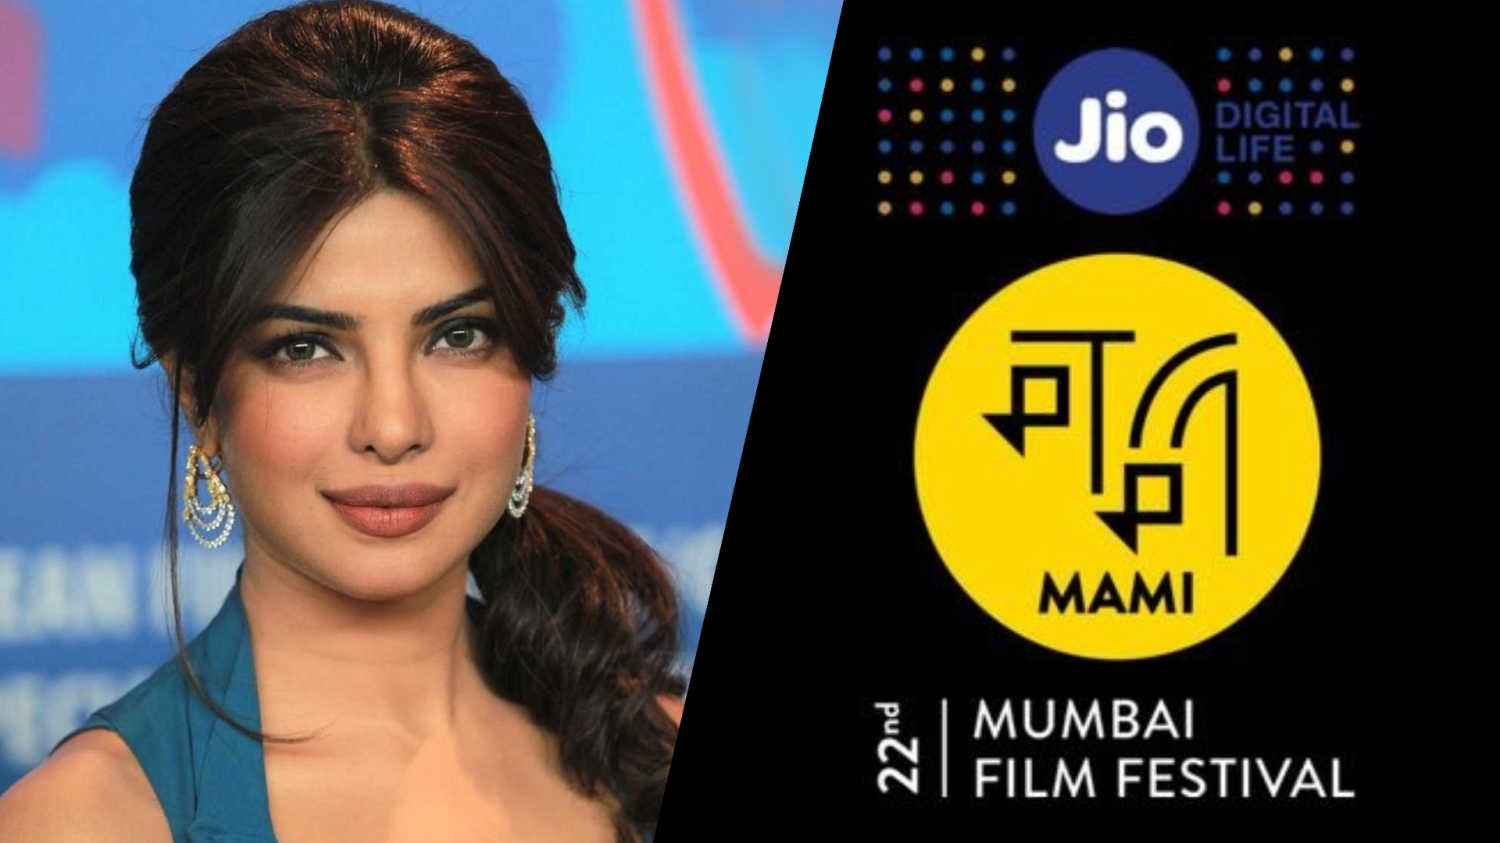 Priyanka Chopra Jonas named MAMI film festival chairperson | MAMI திரைப்பட விழாவின் தலைவராக பிரியங்கா சோப்ரா ஜோனாஸ் நியமிக்கப்பட்டார்_30.1